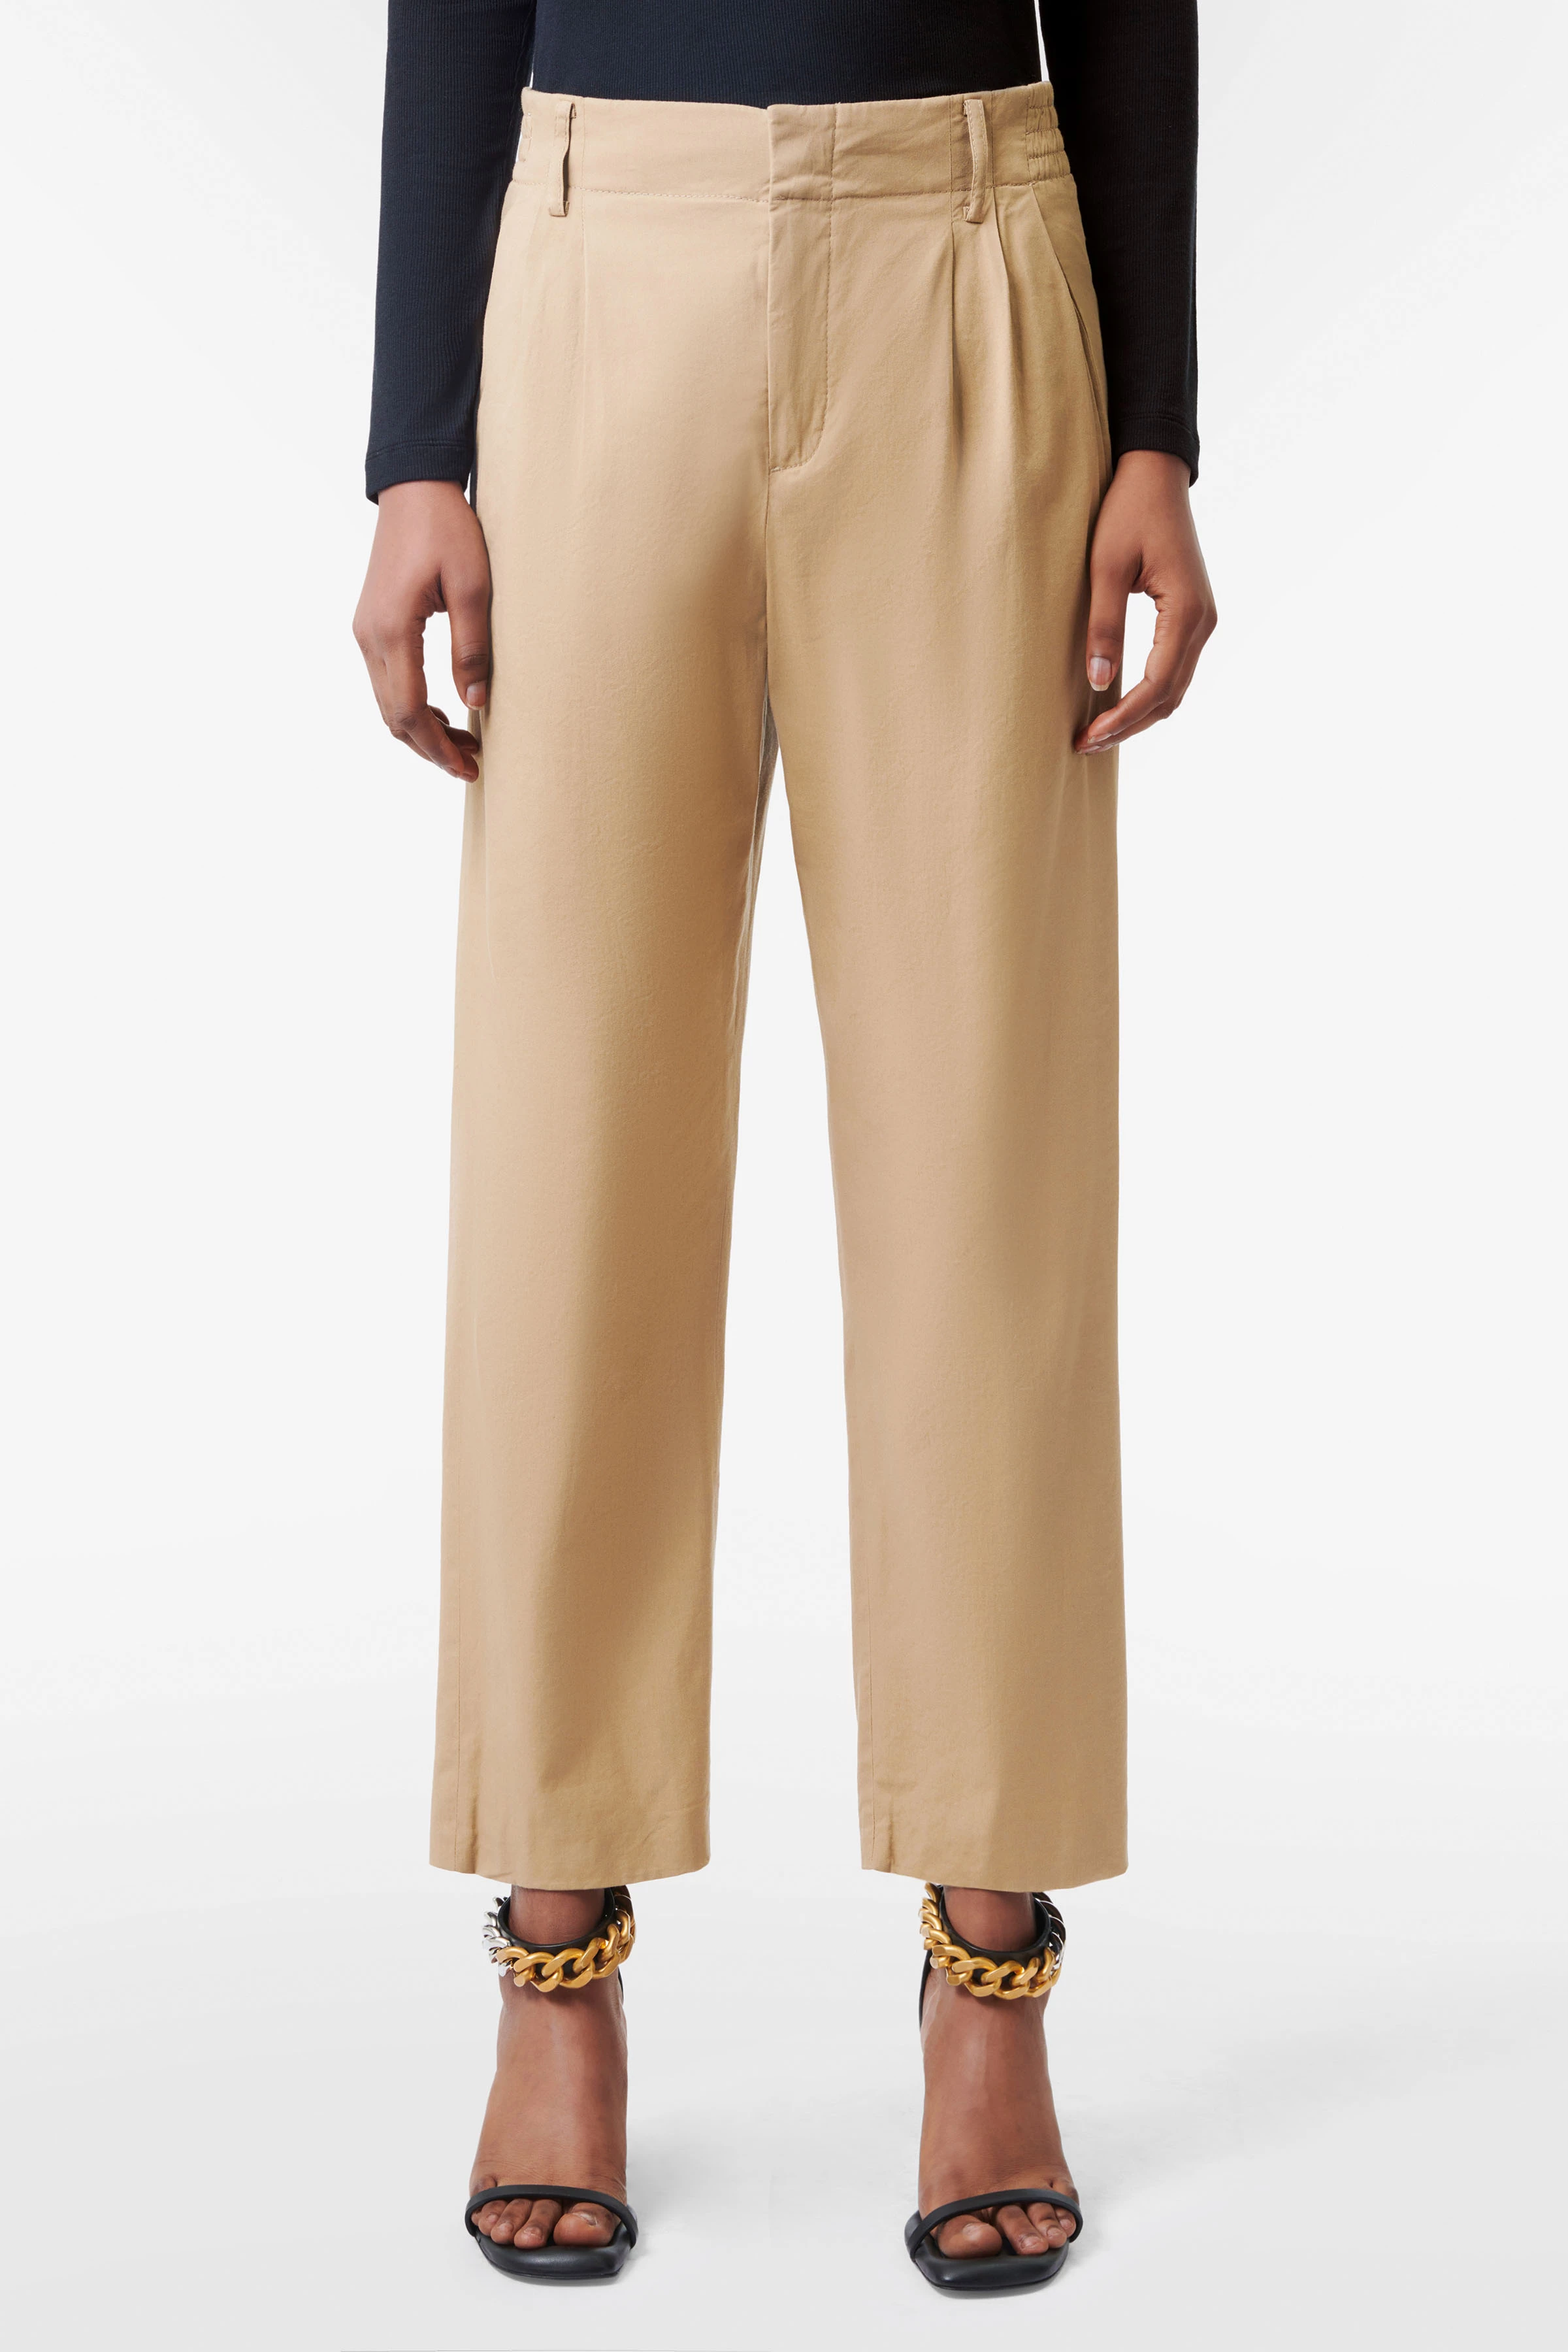 Pleated Trouser in Viscose Linen Twill, Women's Pants